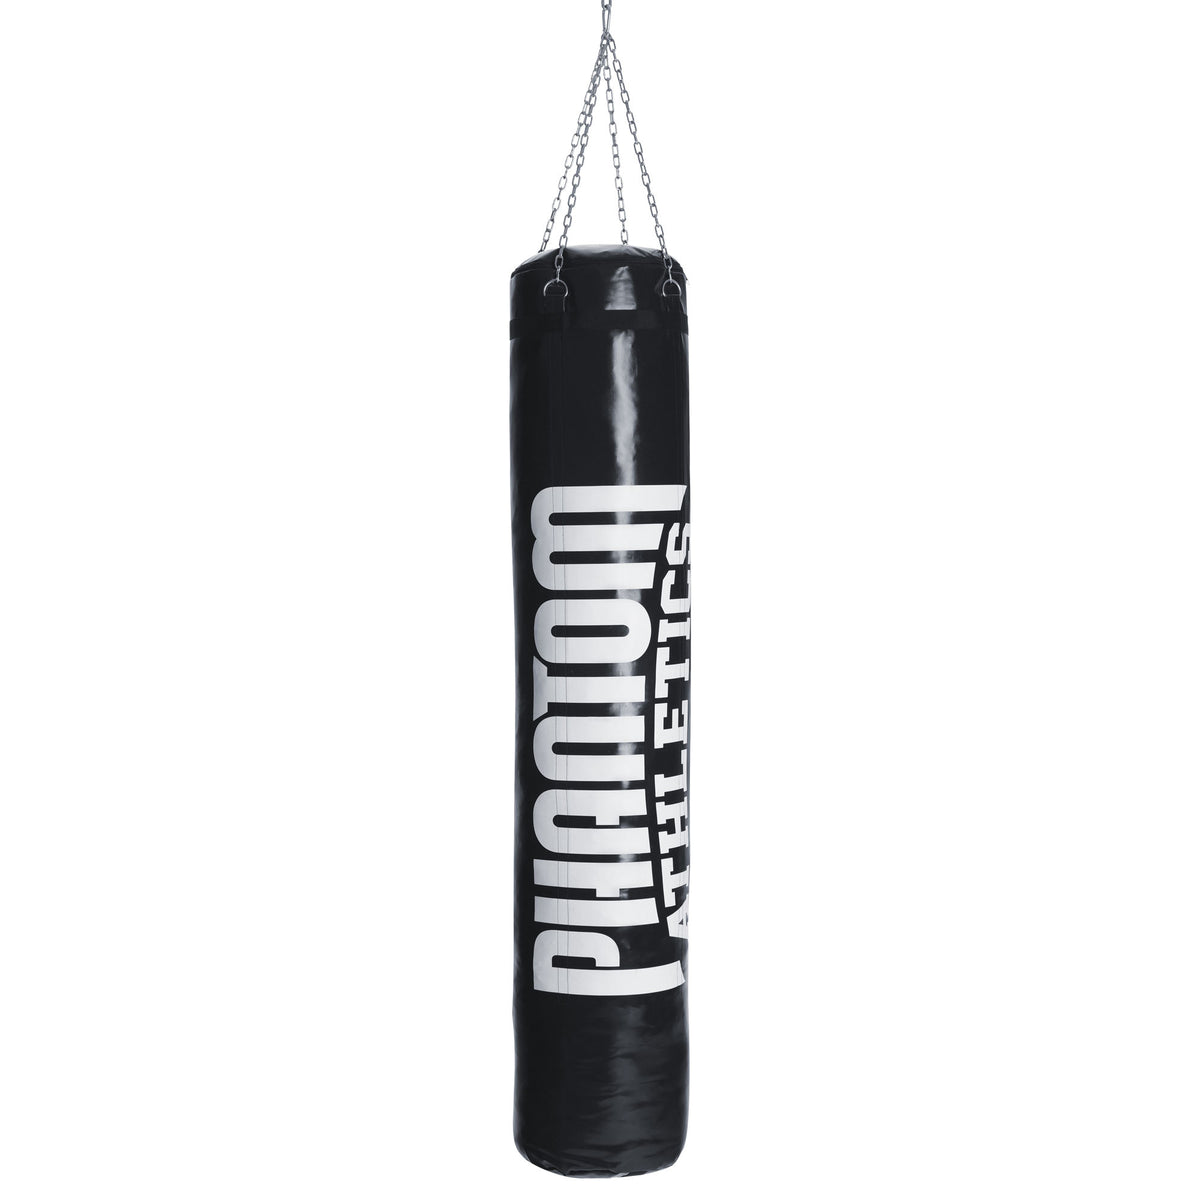 Phantom High Performance boksesekk for kampsport i 180cm